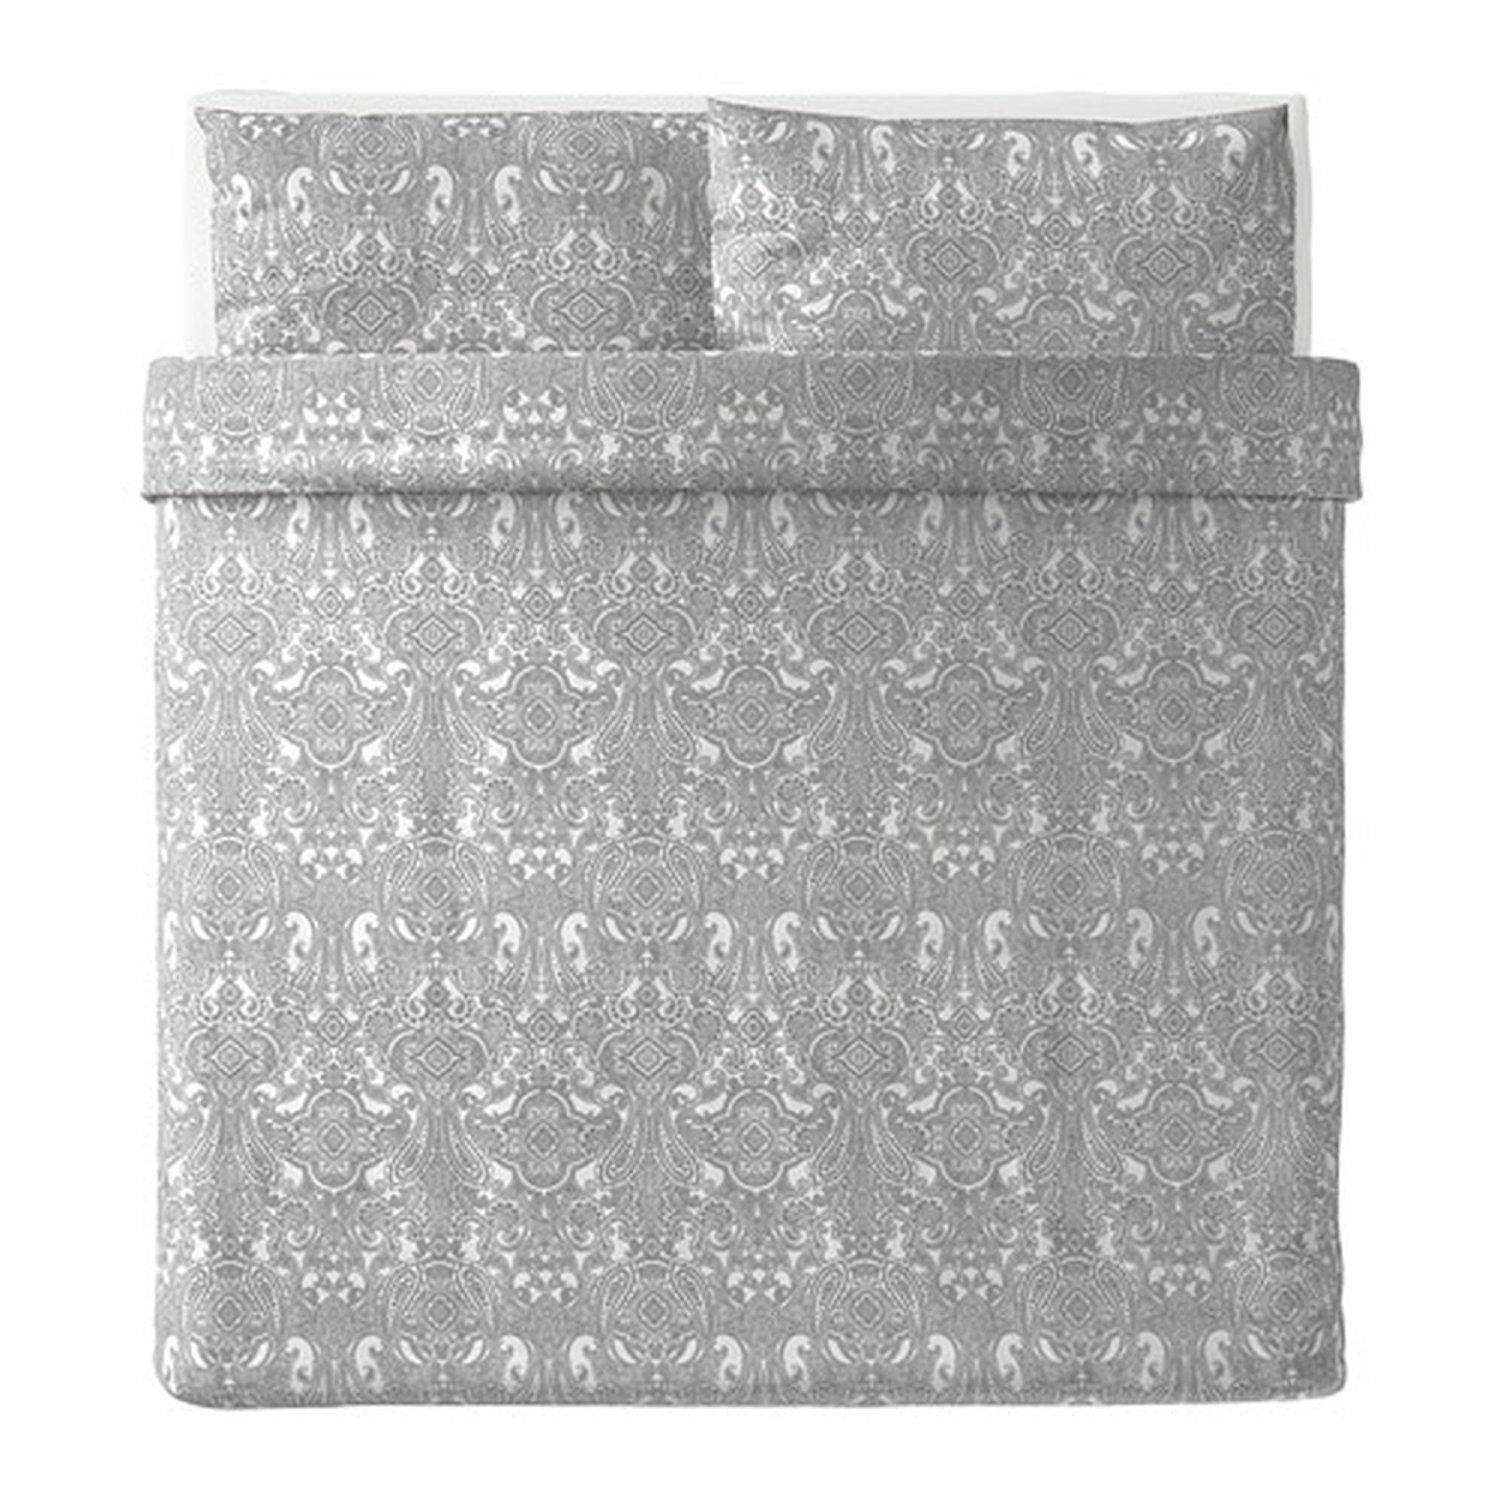 IKEA Jattevallmo KING Duvet COVER and Pillowcases Set GRAY White ...